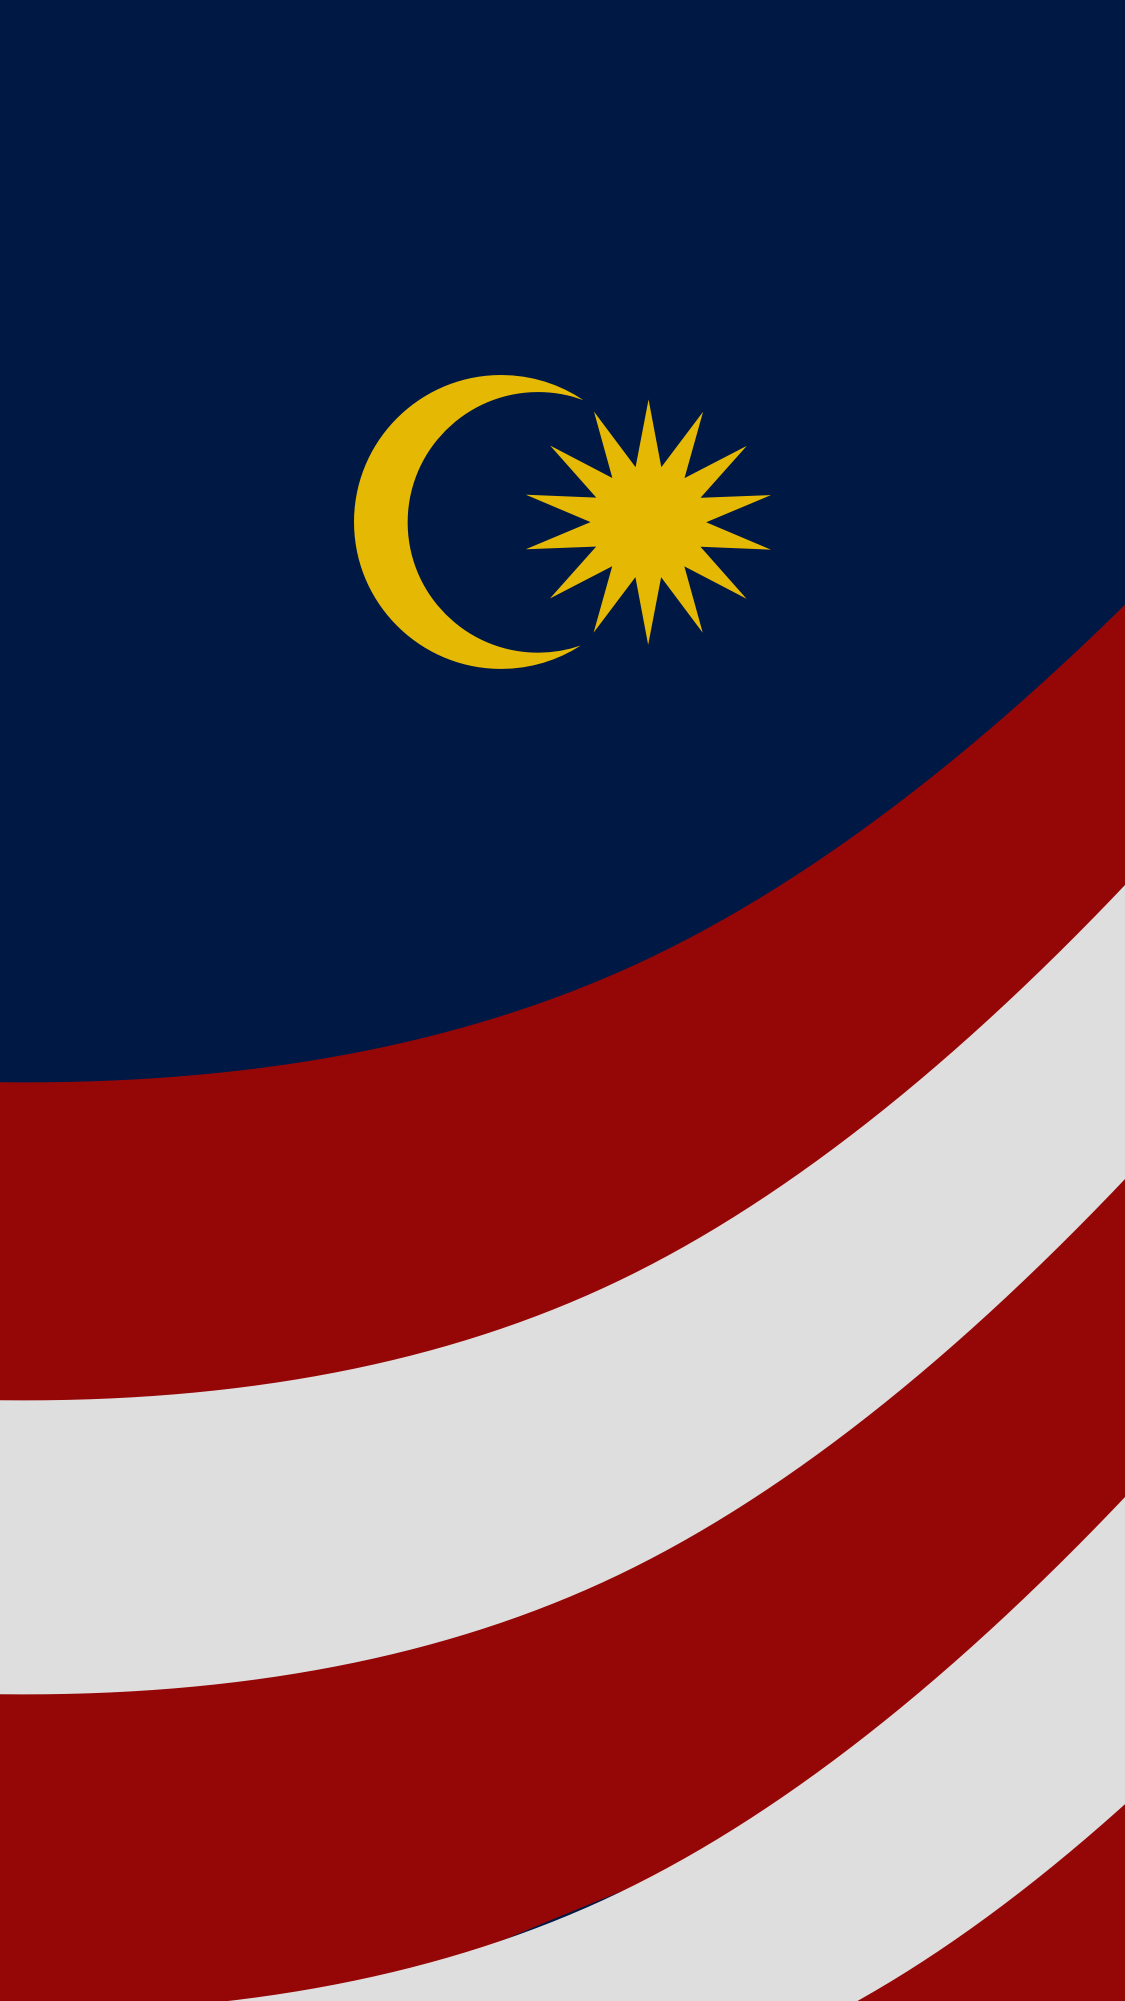 [28+] Malaysia Flag Wallpapers on WallpaperSafari